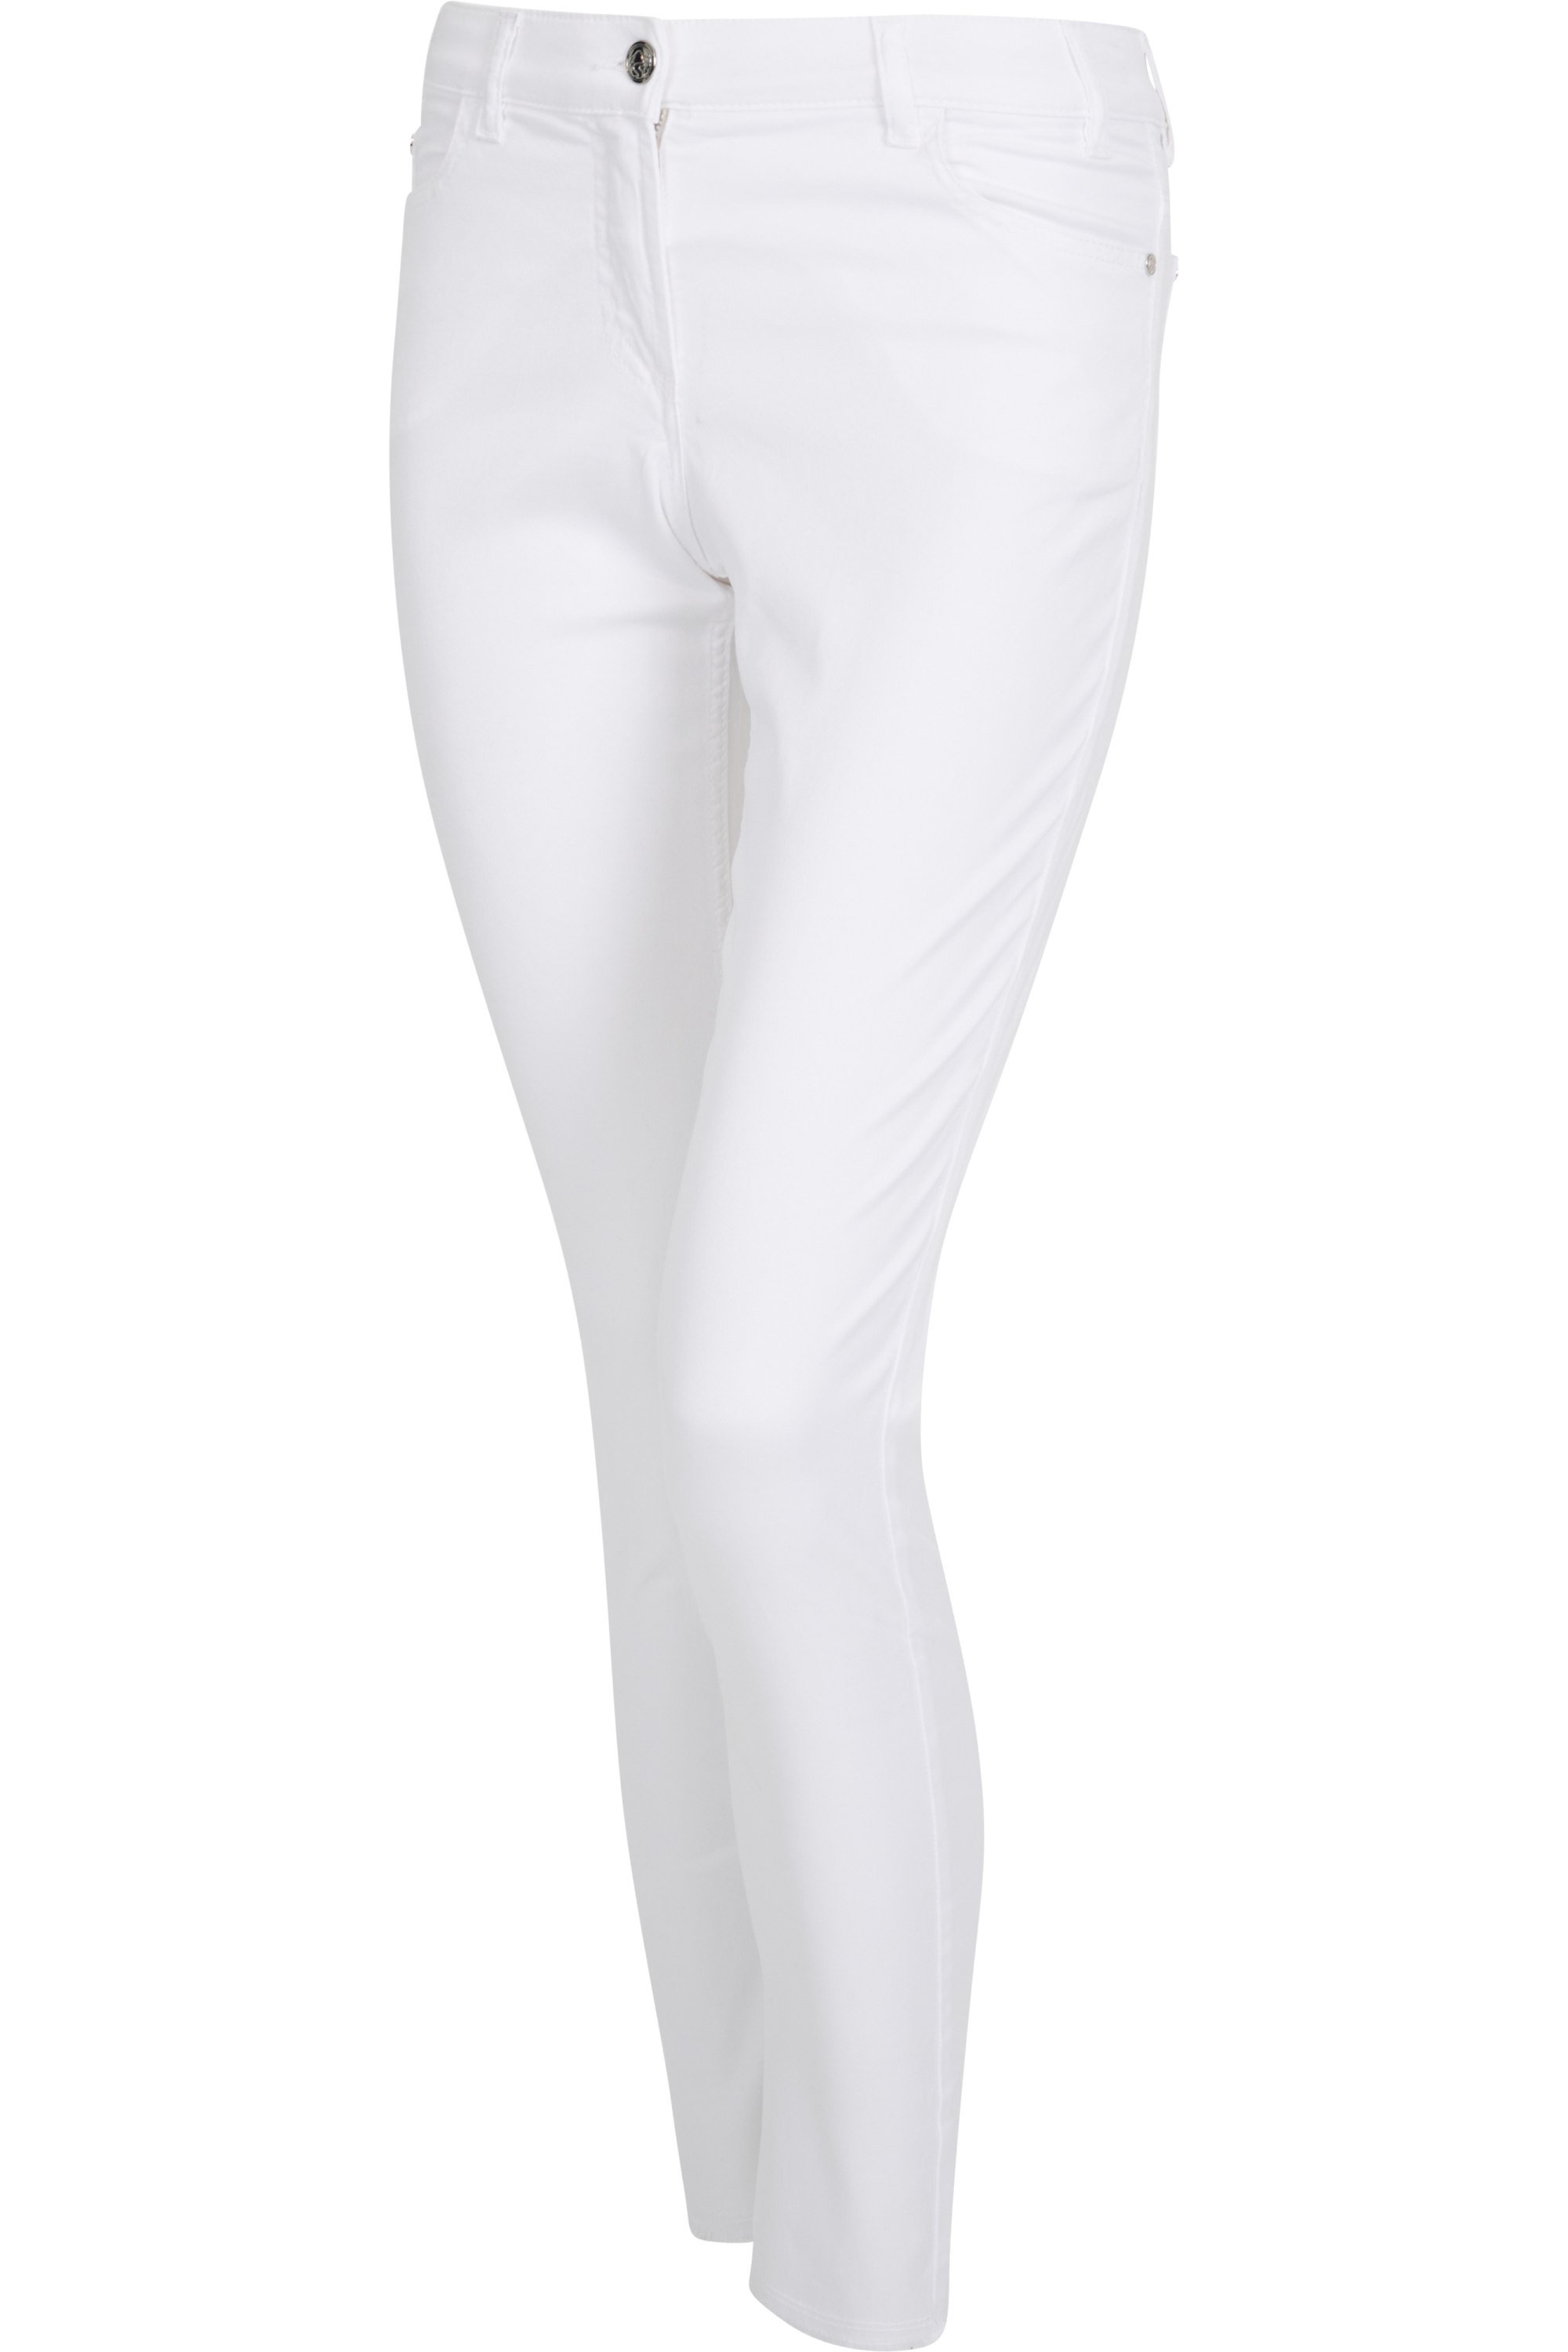 Sportalm kalhoty Enna bright white Velikost: 34